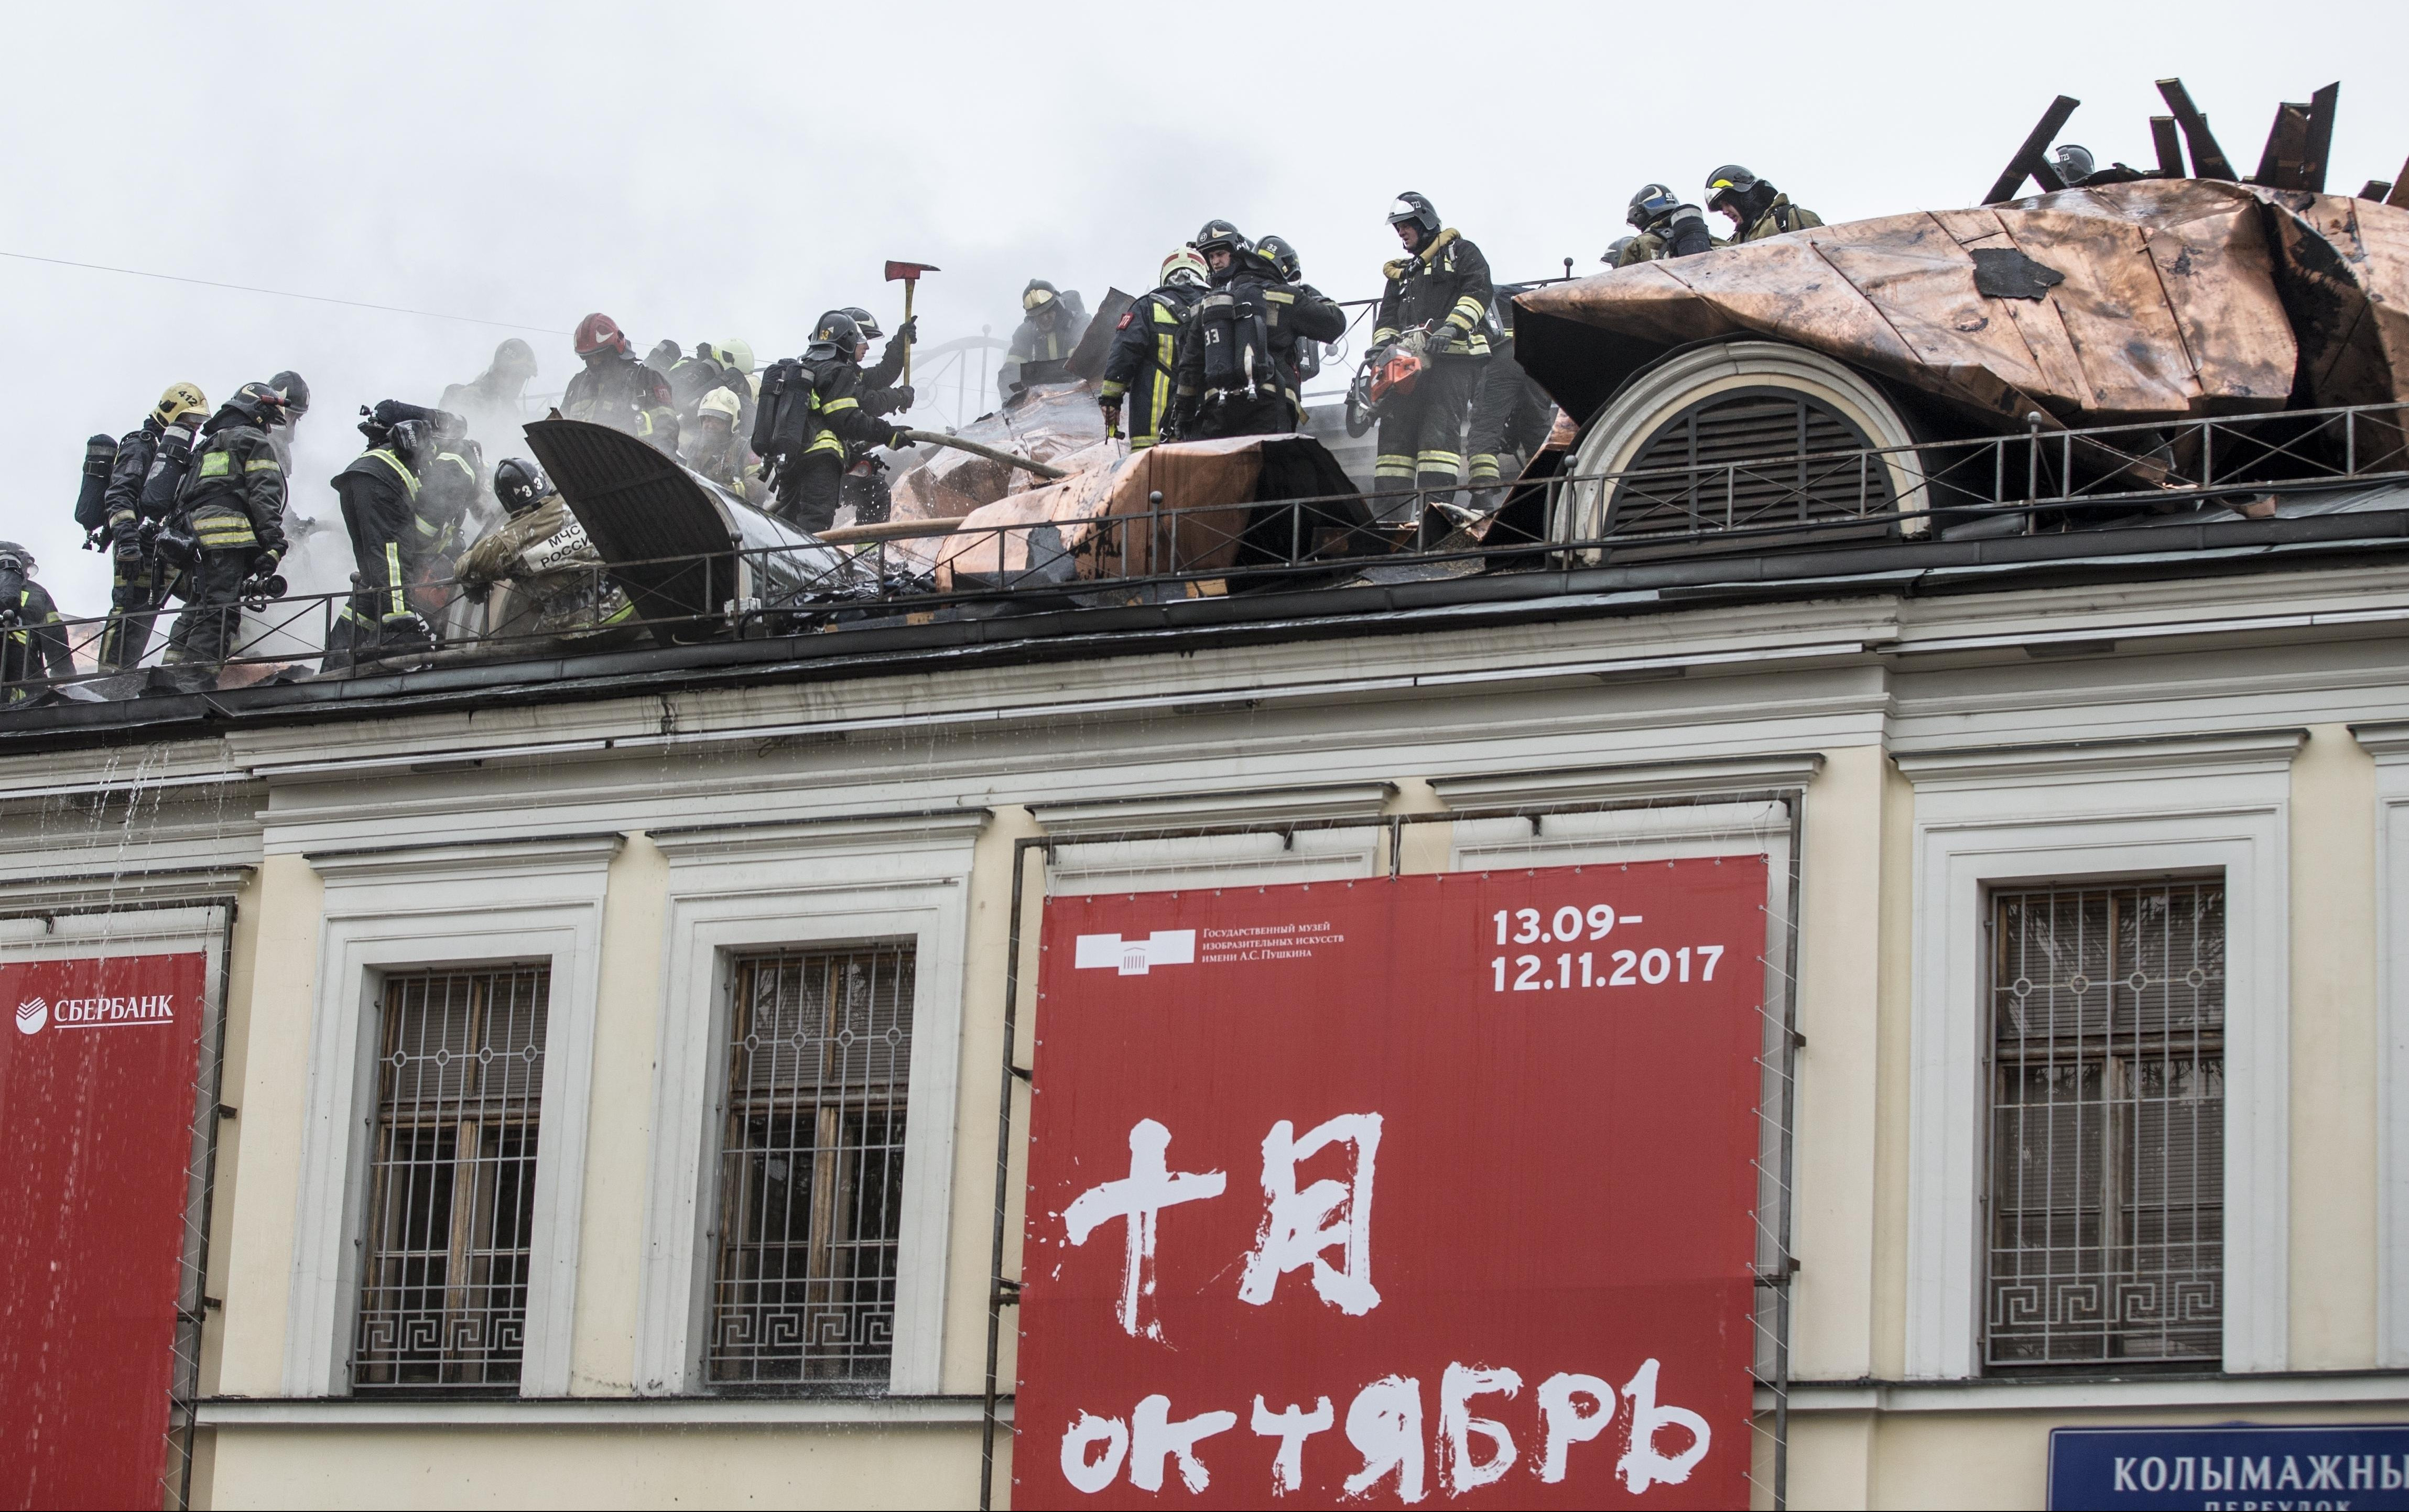 (FOTO) POŽAR U MOSKVI! Goreo Puškinov muzej, evakuisano 30 ljudi!